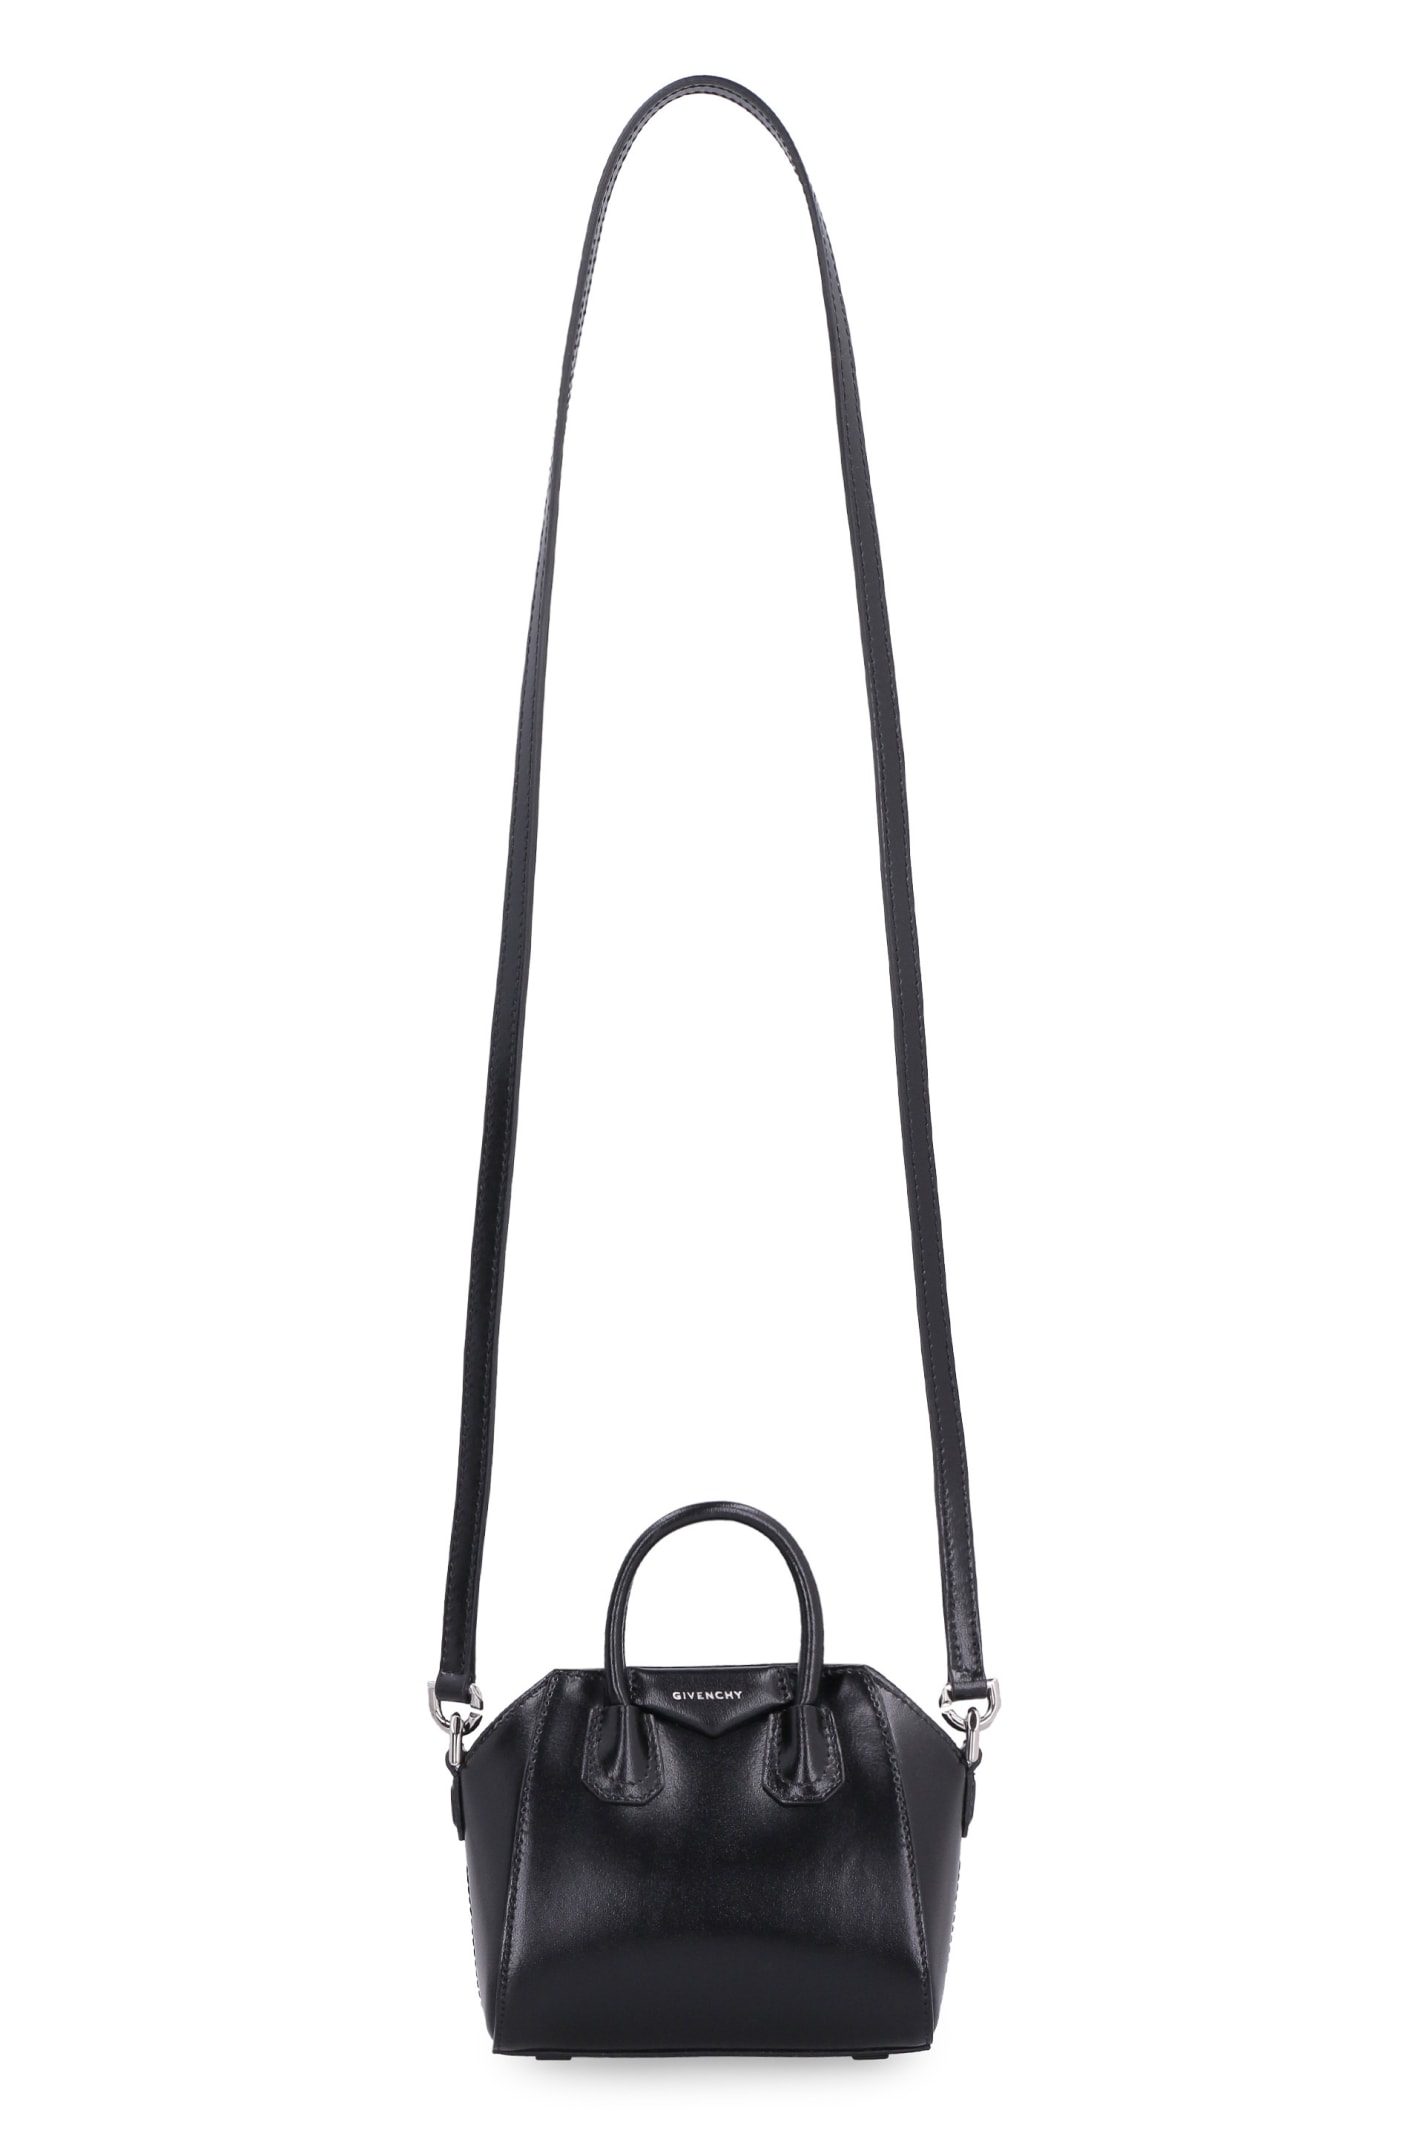 Givenchy Antigona Leather Micro Bag